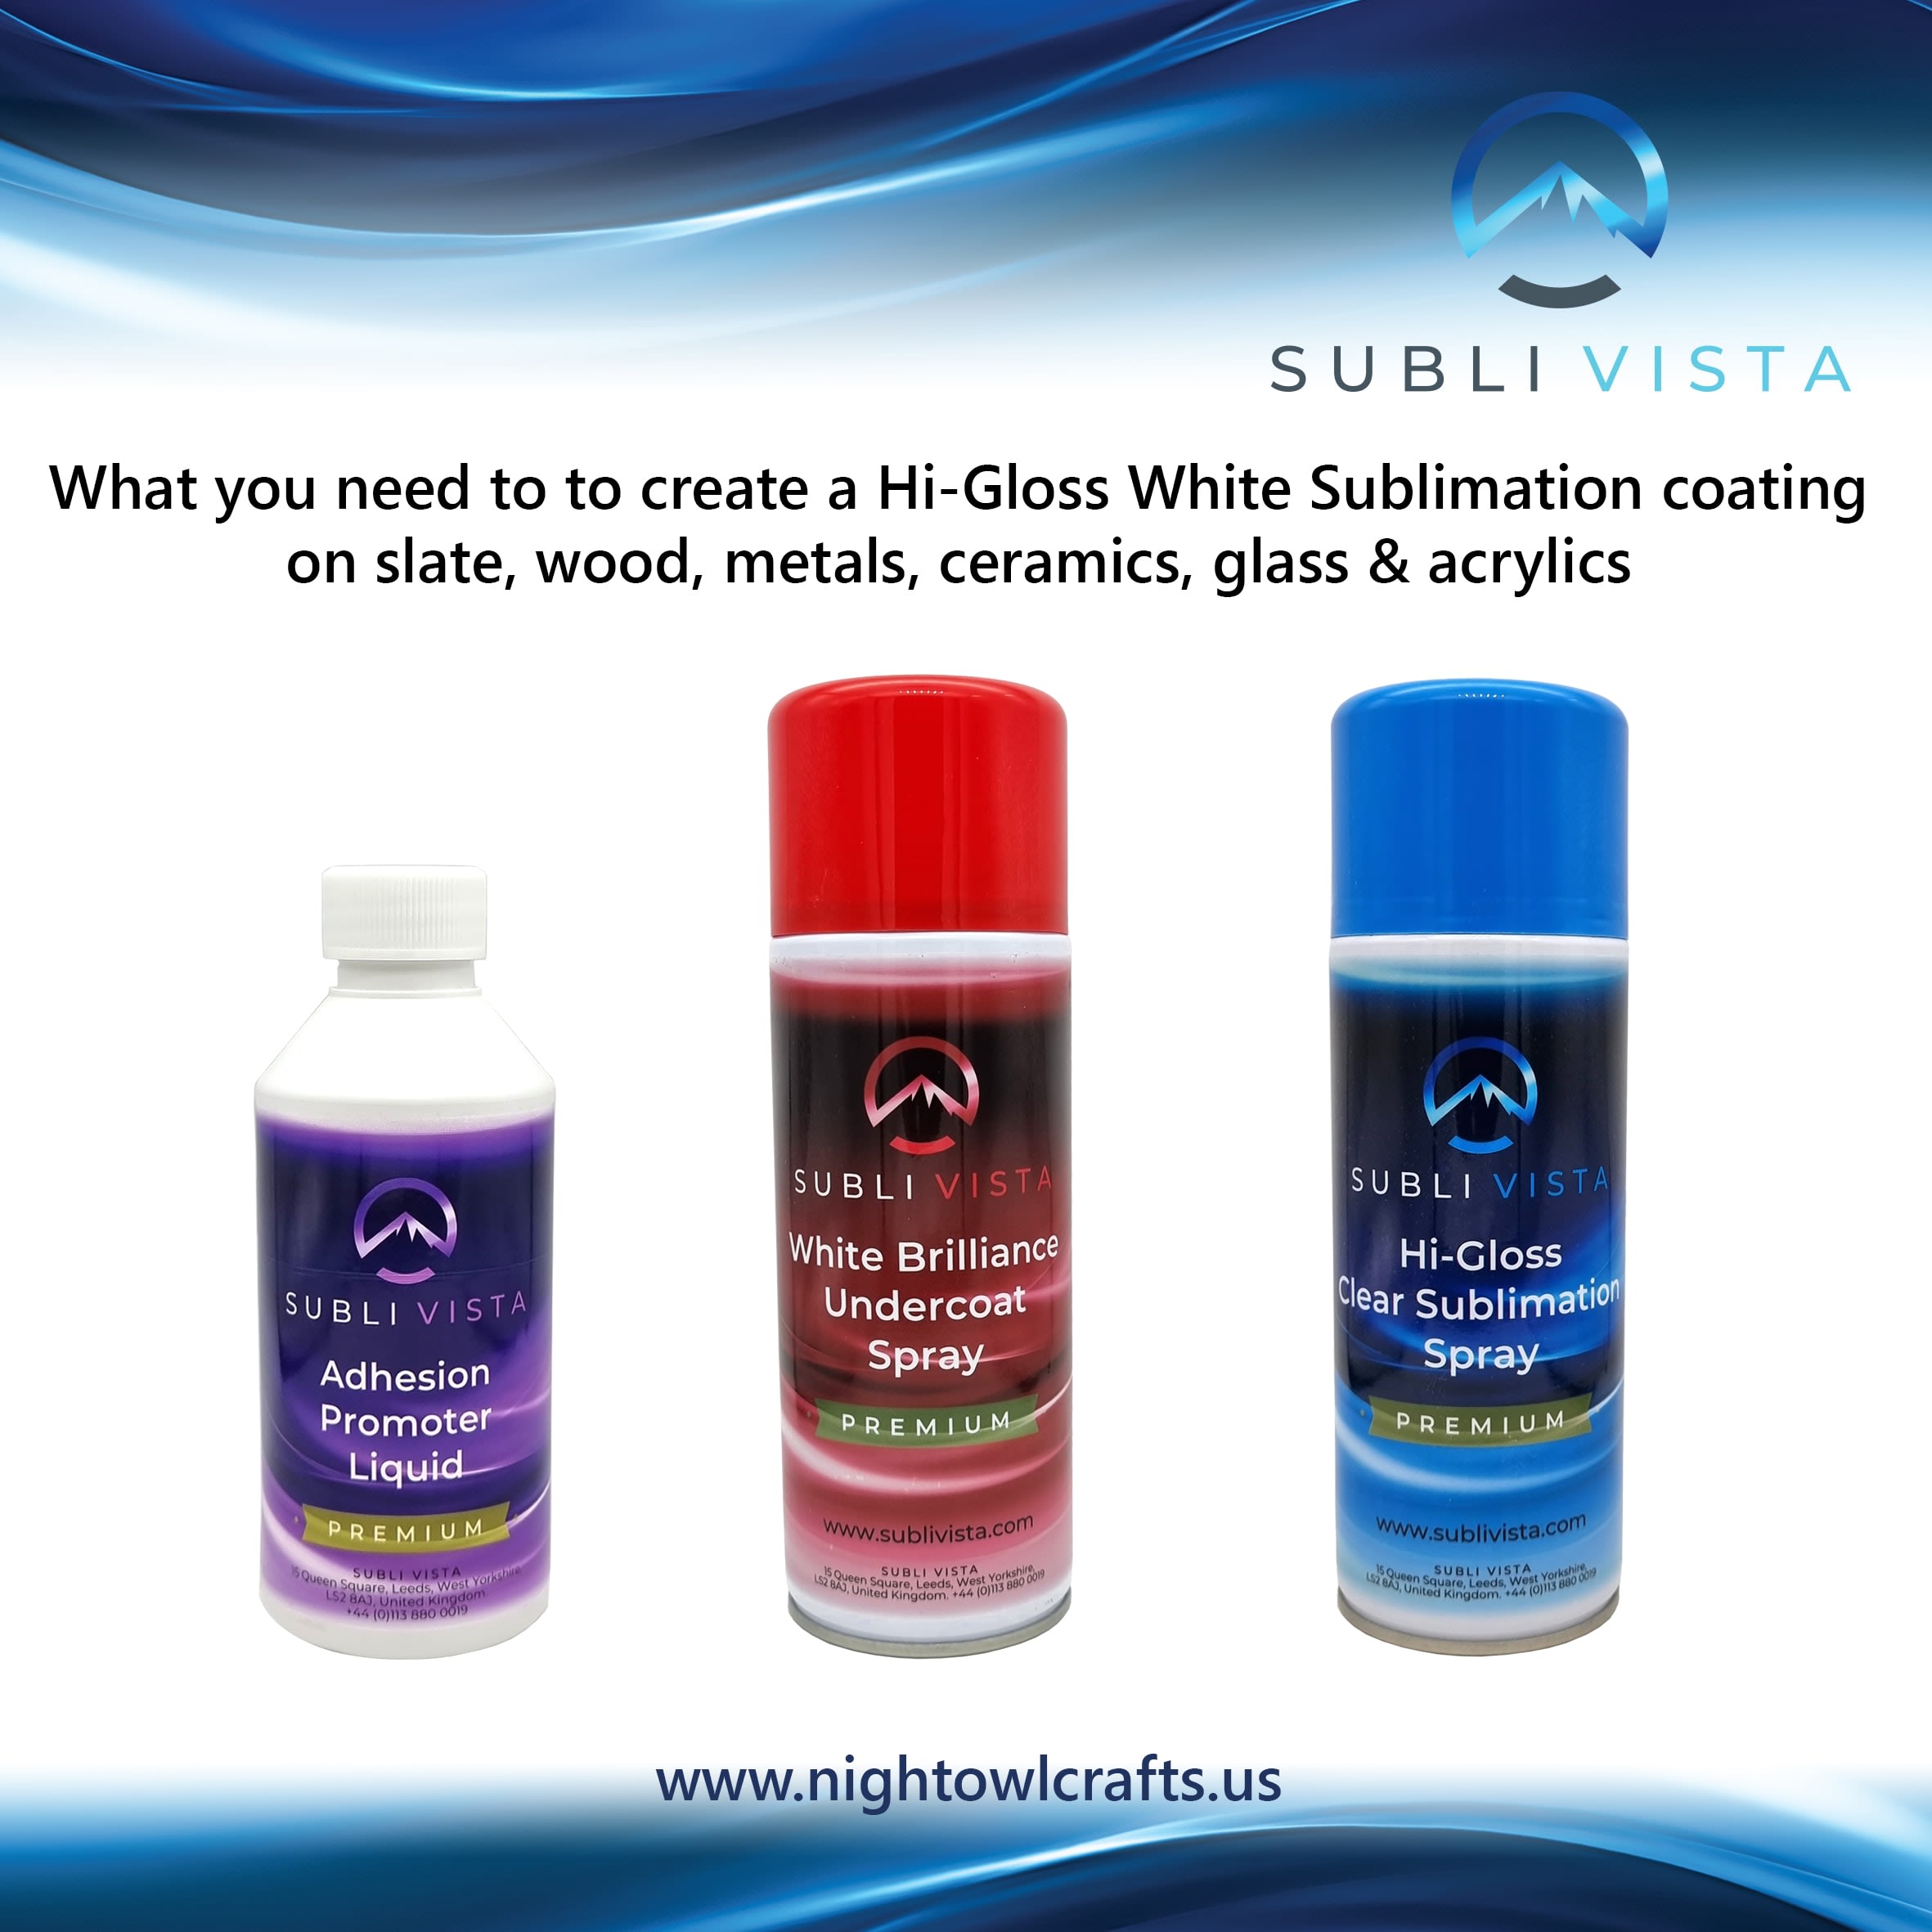 Subli Glaze Clear Sublimation Coating Capacity: 400 ml